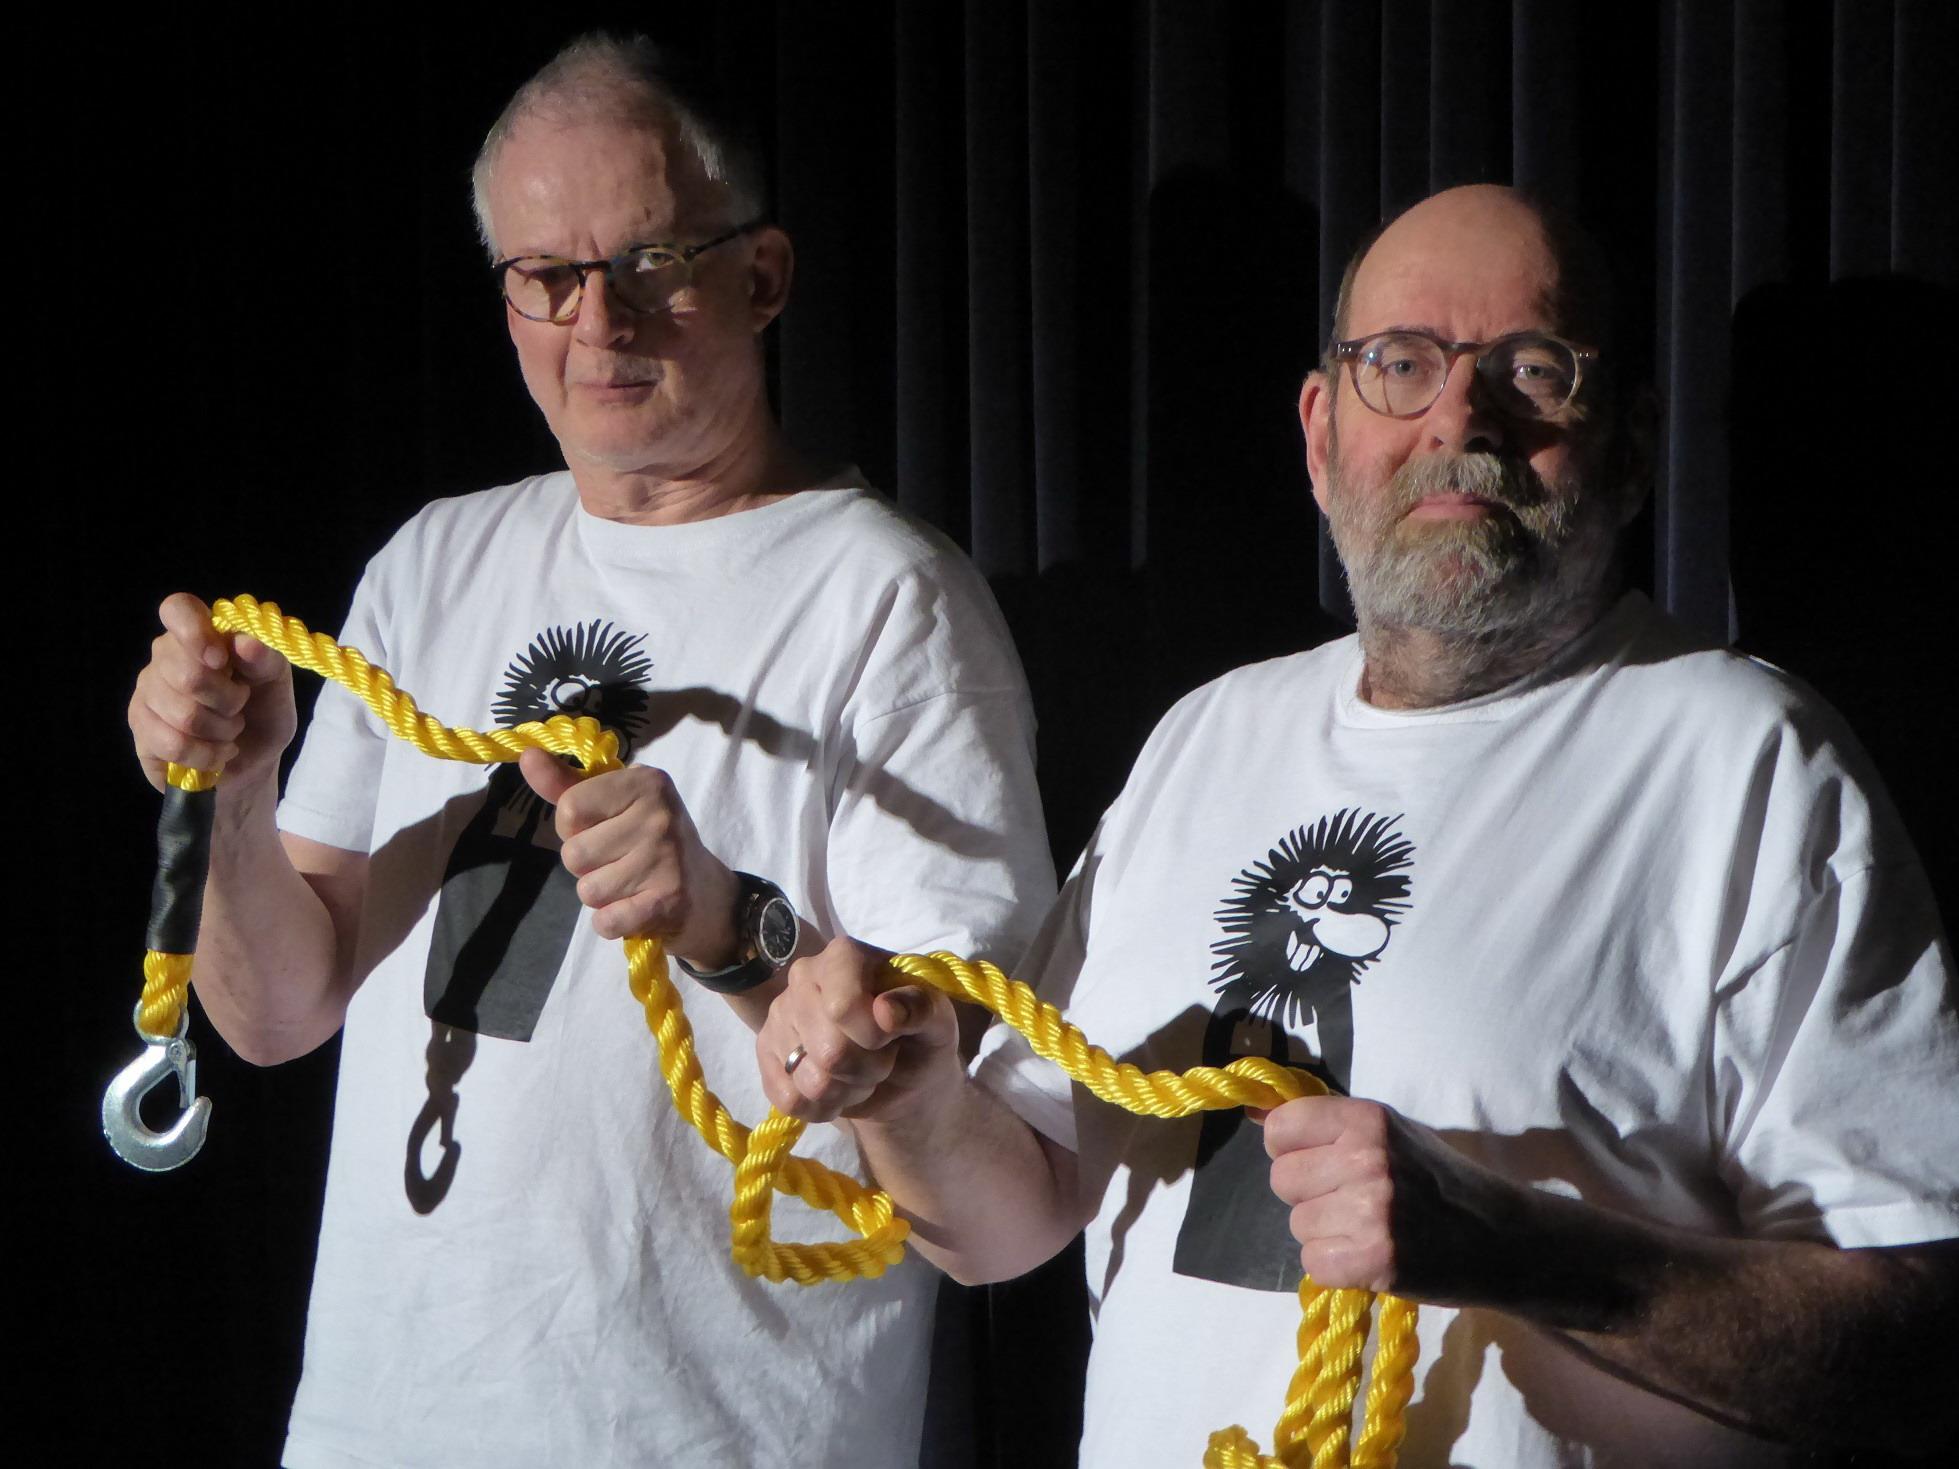 Greifenstein und Herrmann auf der Bühne, halten gemeinsam ein Seil in der Hand